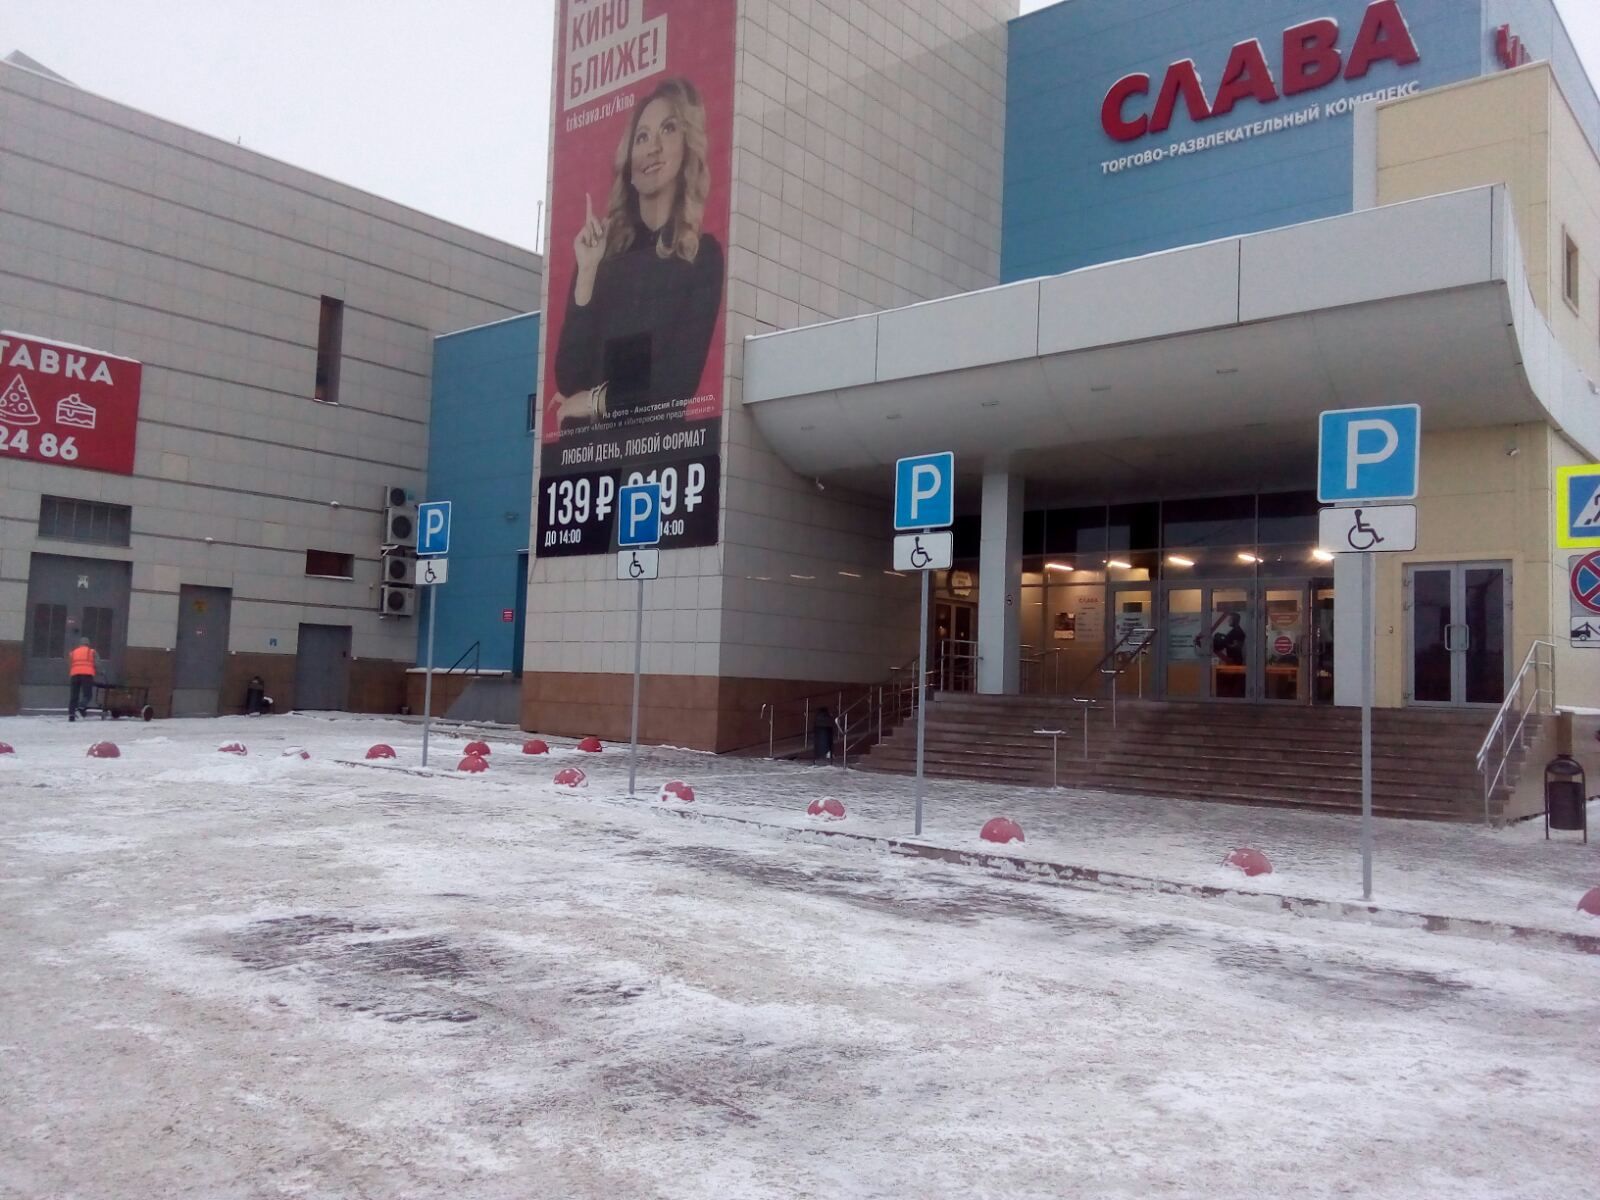 В Копейске возле ТРК «Слава» появится парковка для инвалидов